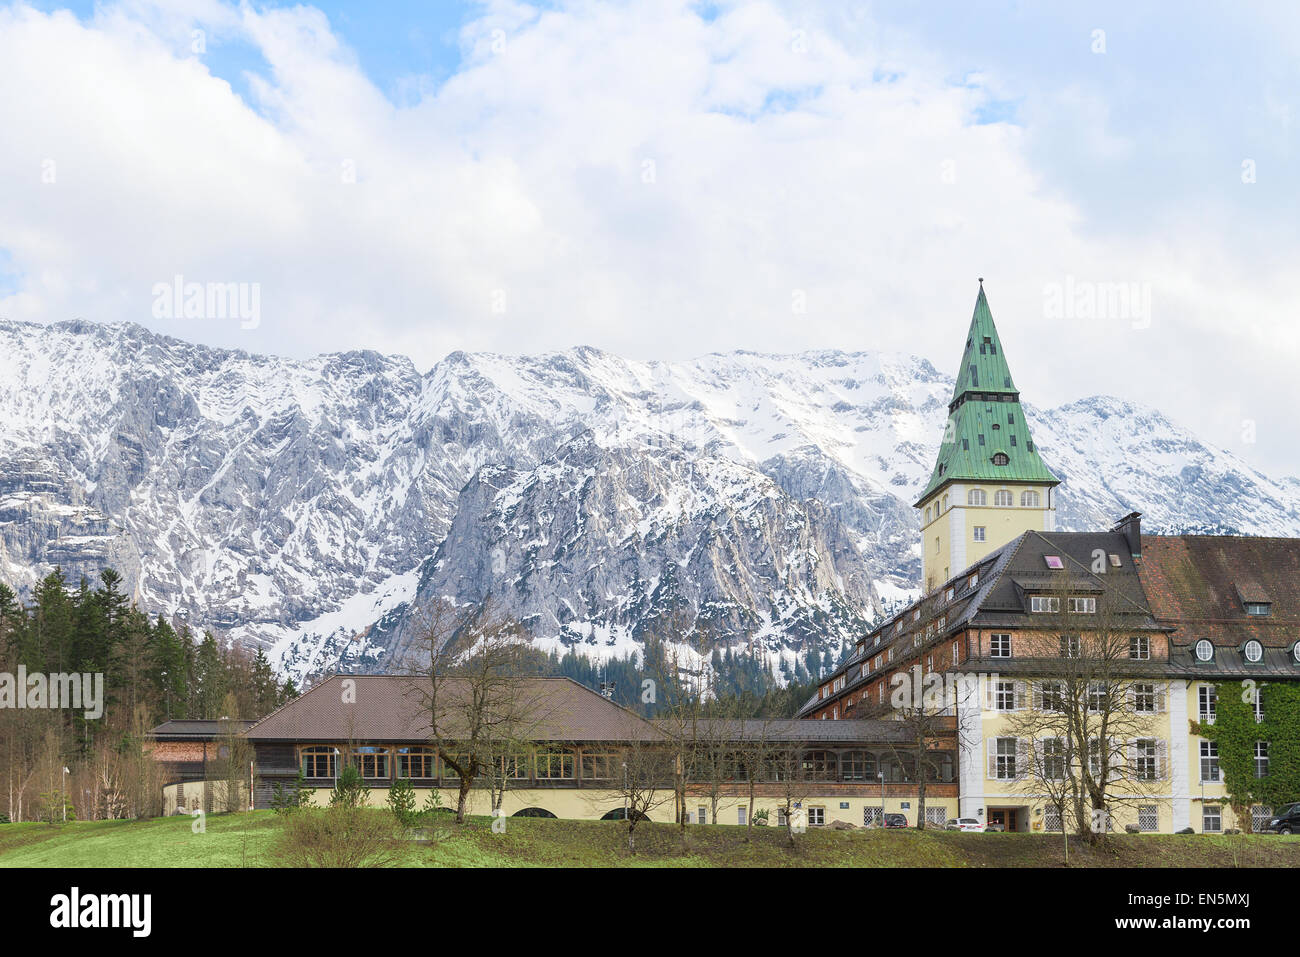 Schloss Elmau è un hotel di lusso che sarà il sito di La quarantunesima edizione del vertice G7 di giugno. Questo prestigioso hotel a cinque stelle di oggi offre 123 camere e suite. È annoverato tra i migliori hotel del mondo. Foto Stock